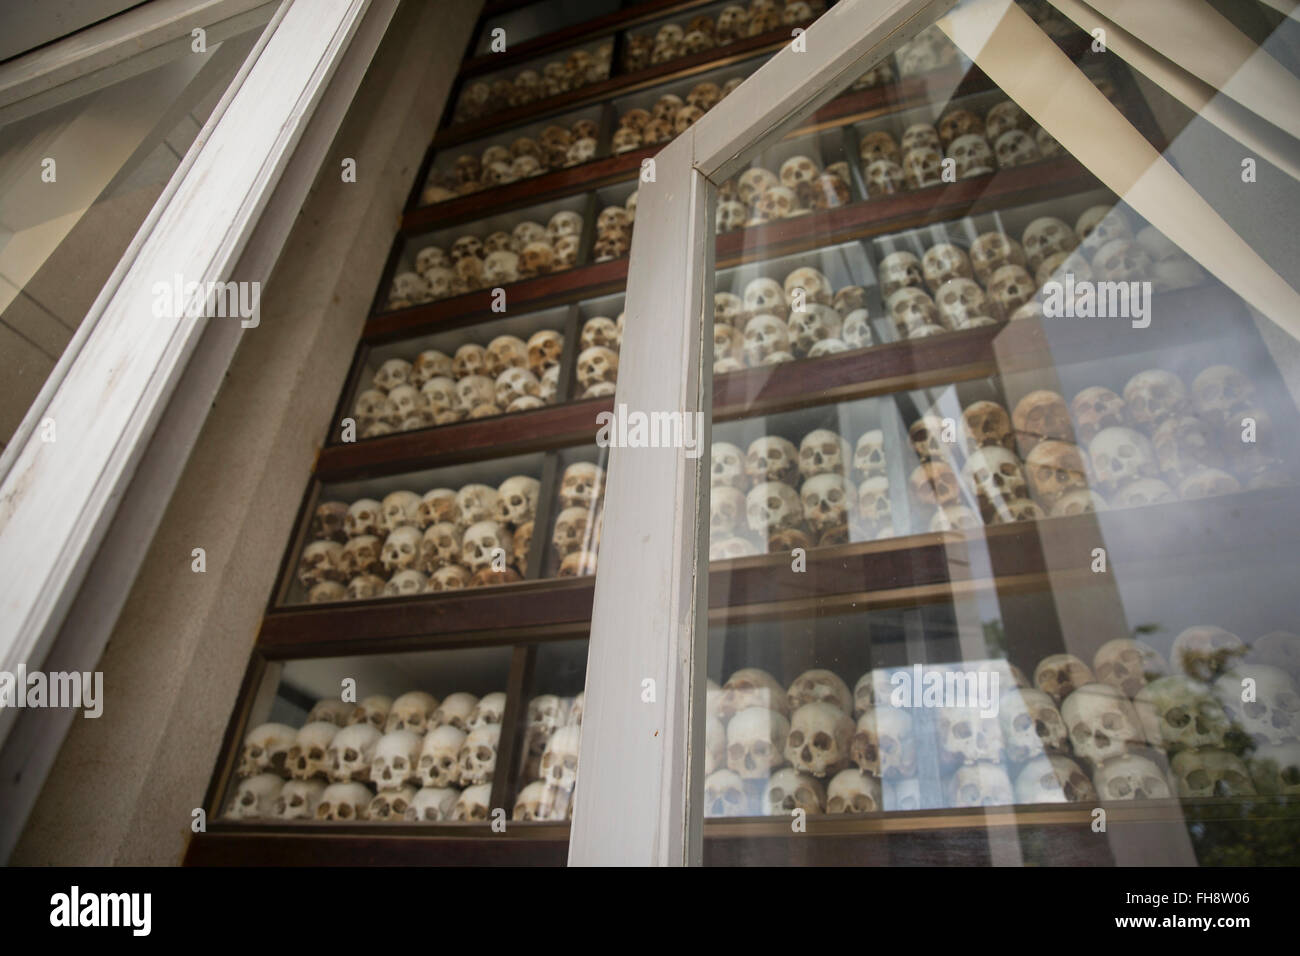 skulls in Killing Fields memorial in Phnom Penh, Cambodia Stock Photo